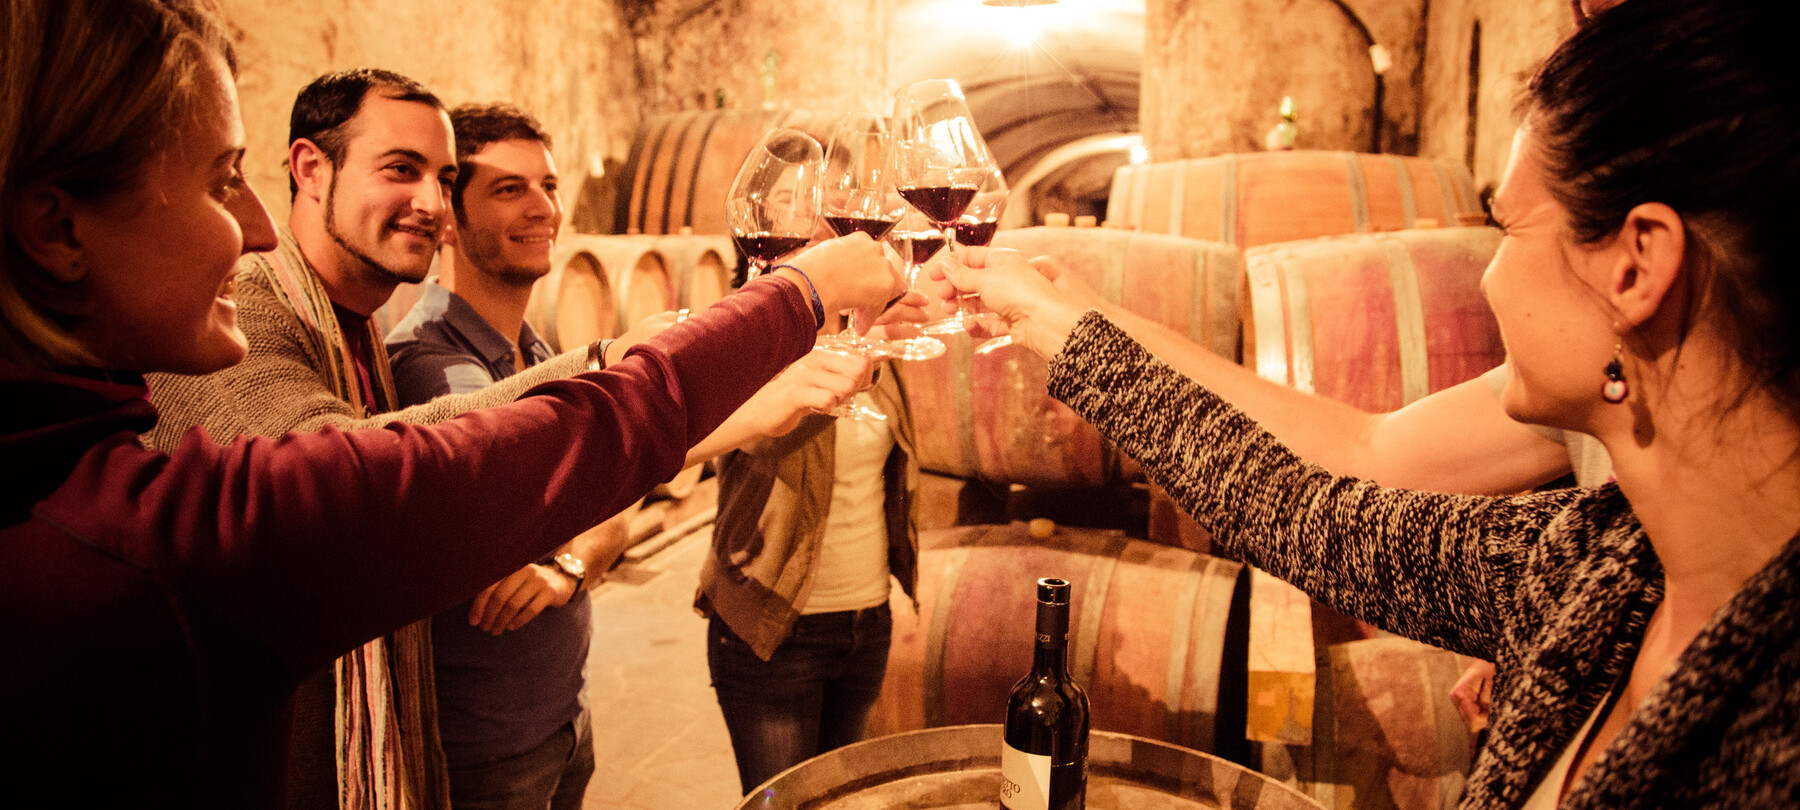 Трентино гордится традициями виноделия, которое насчитывает тысячи лет